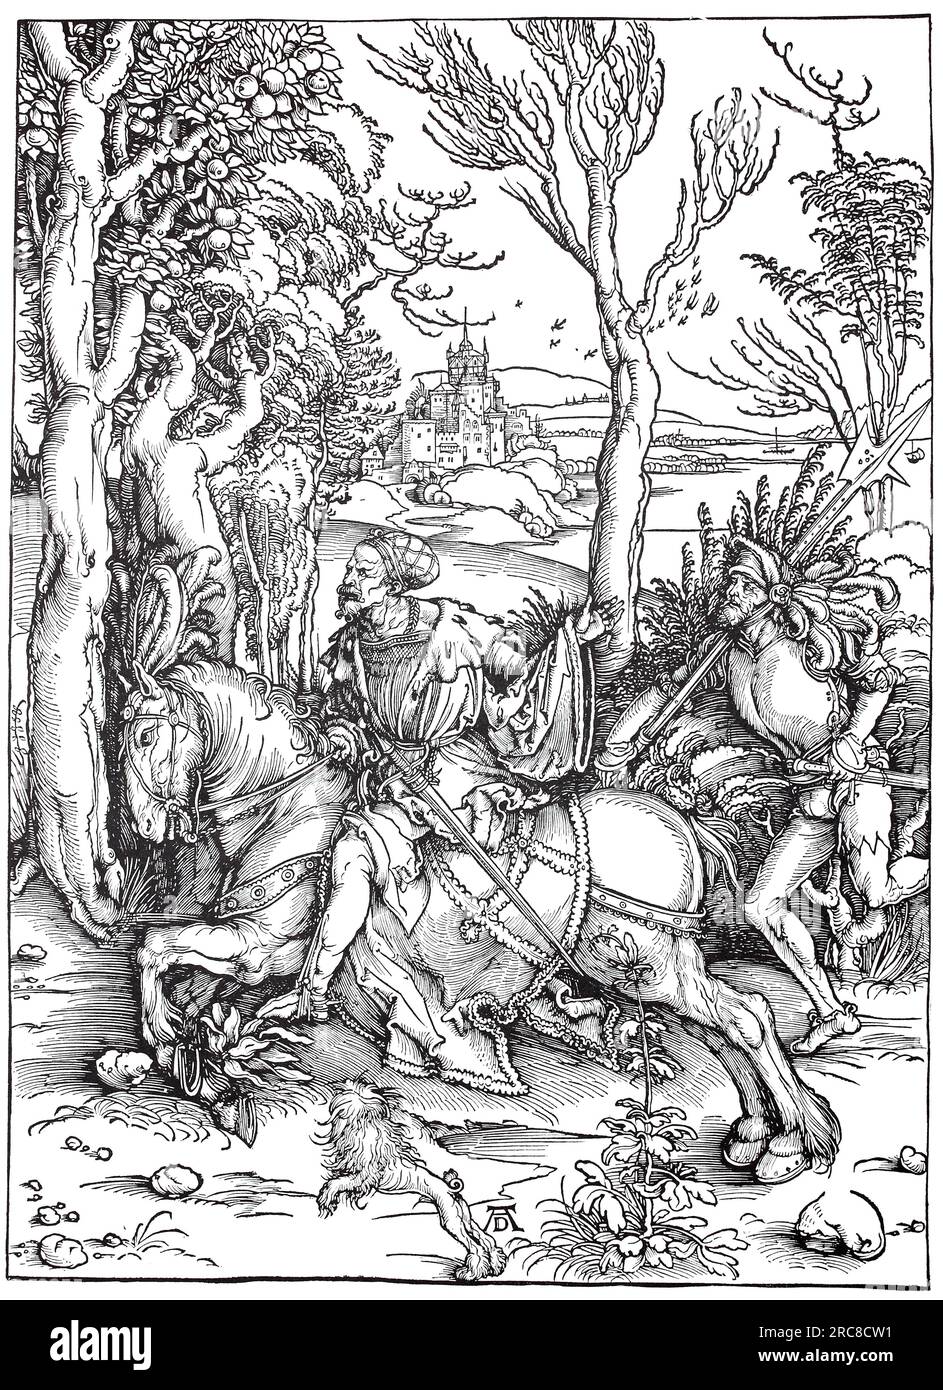 Knight und Landsknecht, Holzschnitt von Albrecht Dürer, historische, digitale verbesserte Reproduktion eines alten Holzschnitts Stockfoto